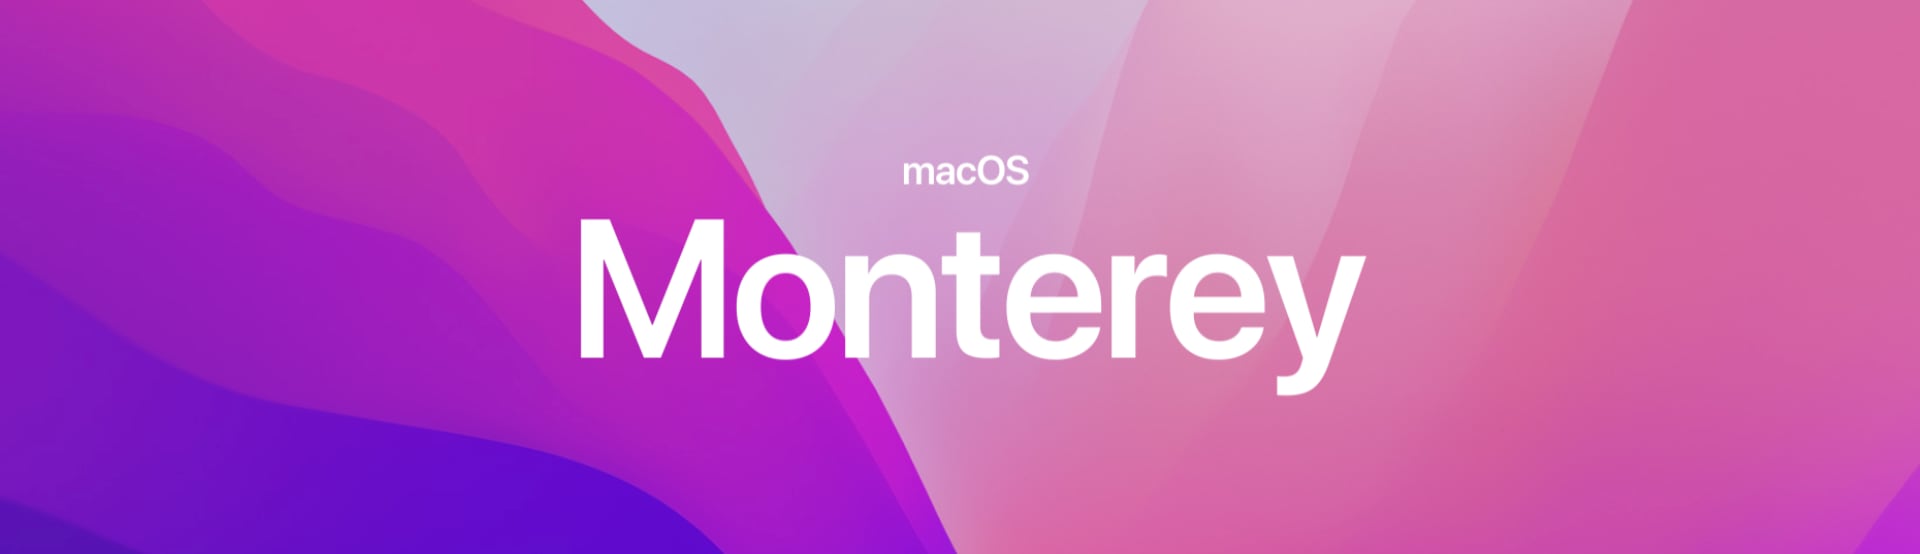 macOS Monterey permite usar un Mac como segunda pantalla de otro Mac 